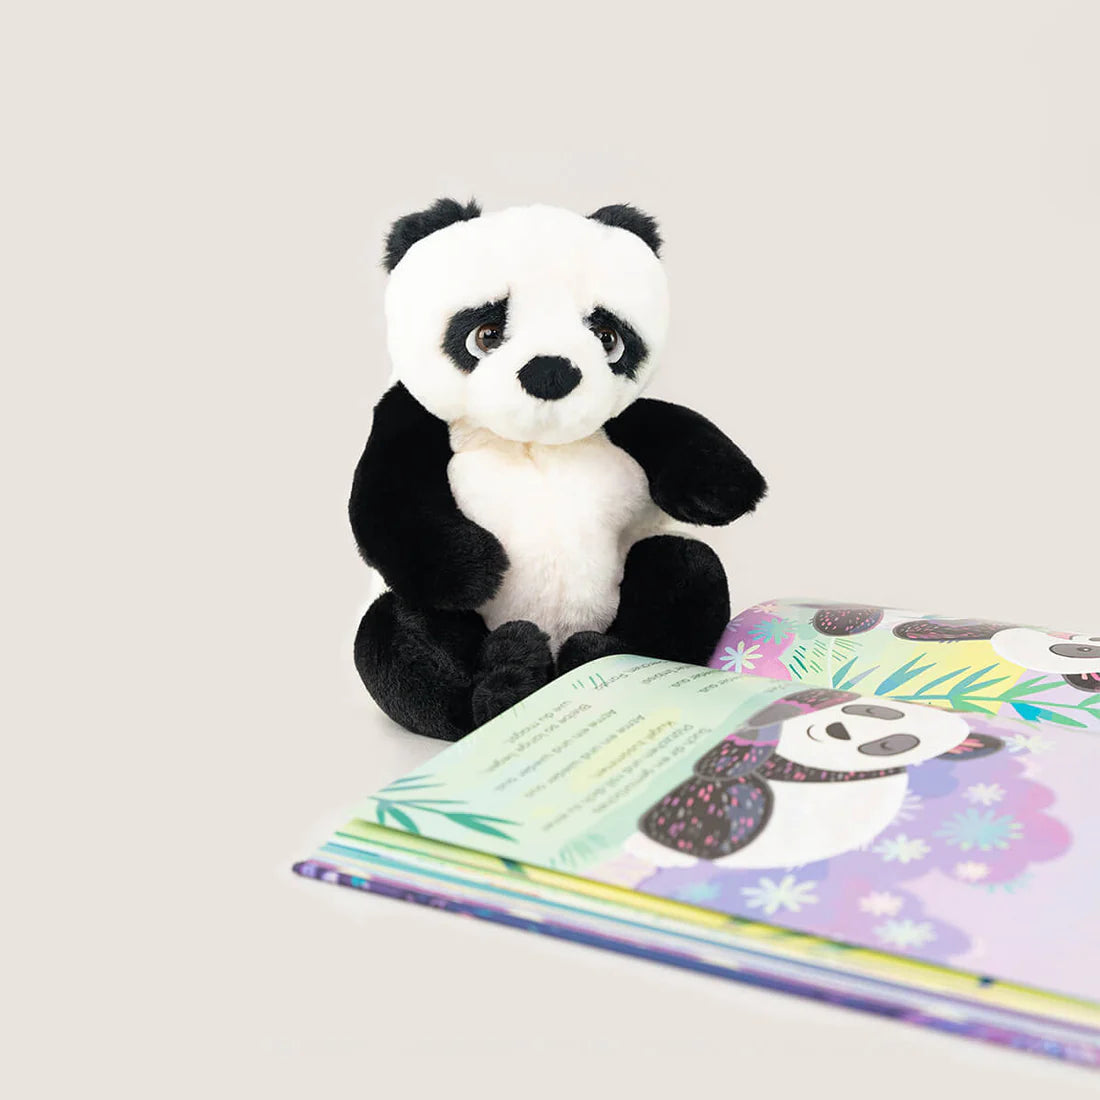 Entspannt wie ein Panda & Stofftier „Panda”